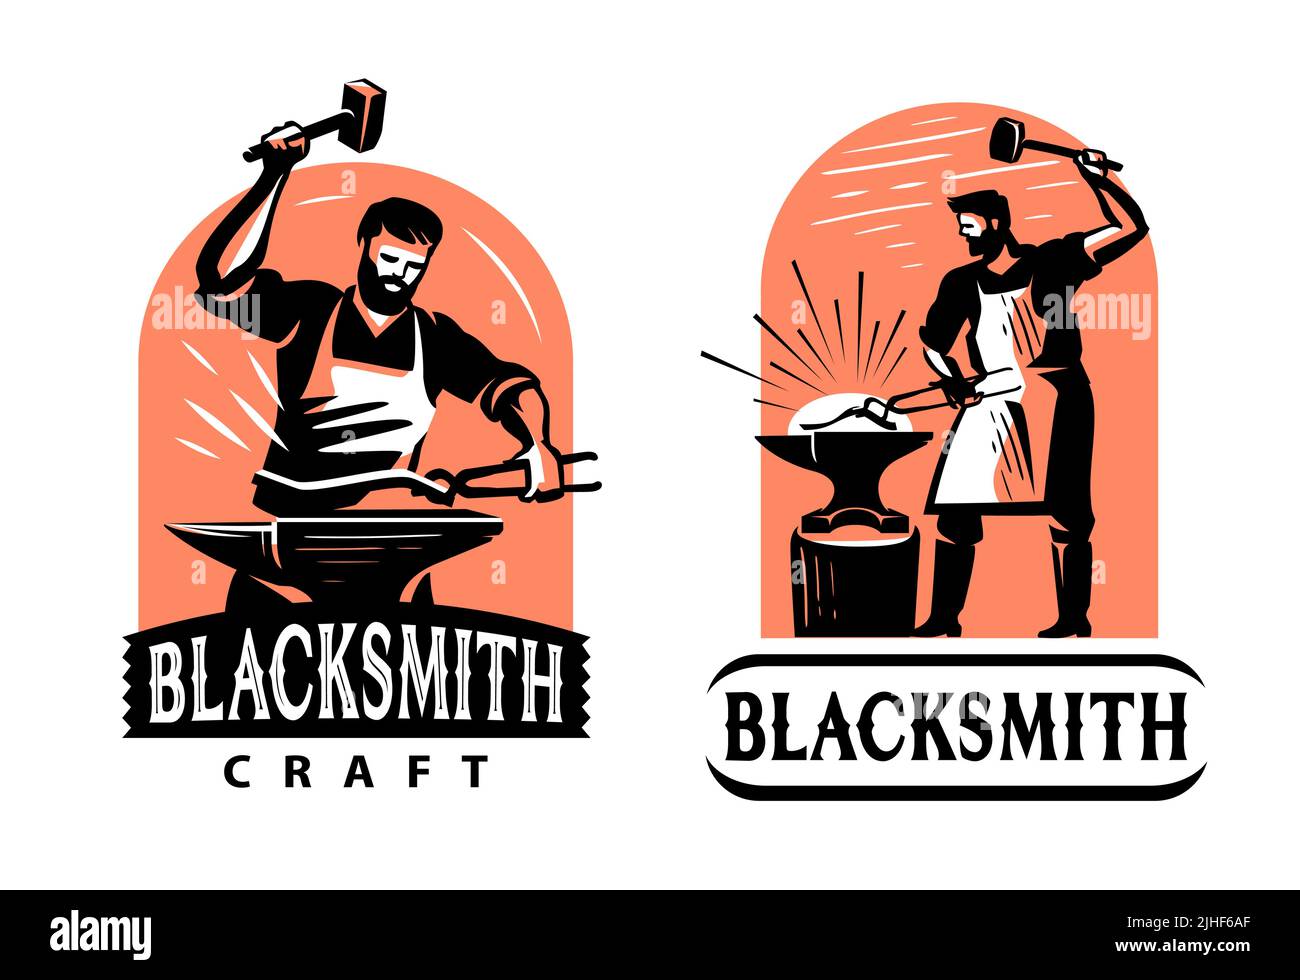 Blacksmith with hammer and anvil logo. Blacksmith shop, workshop, handicraft emblem badge. Vintage vector illustration Stock Vector